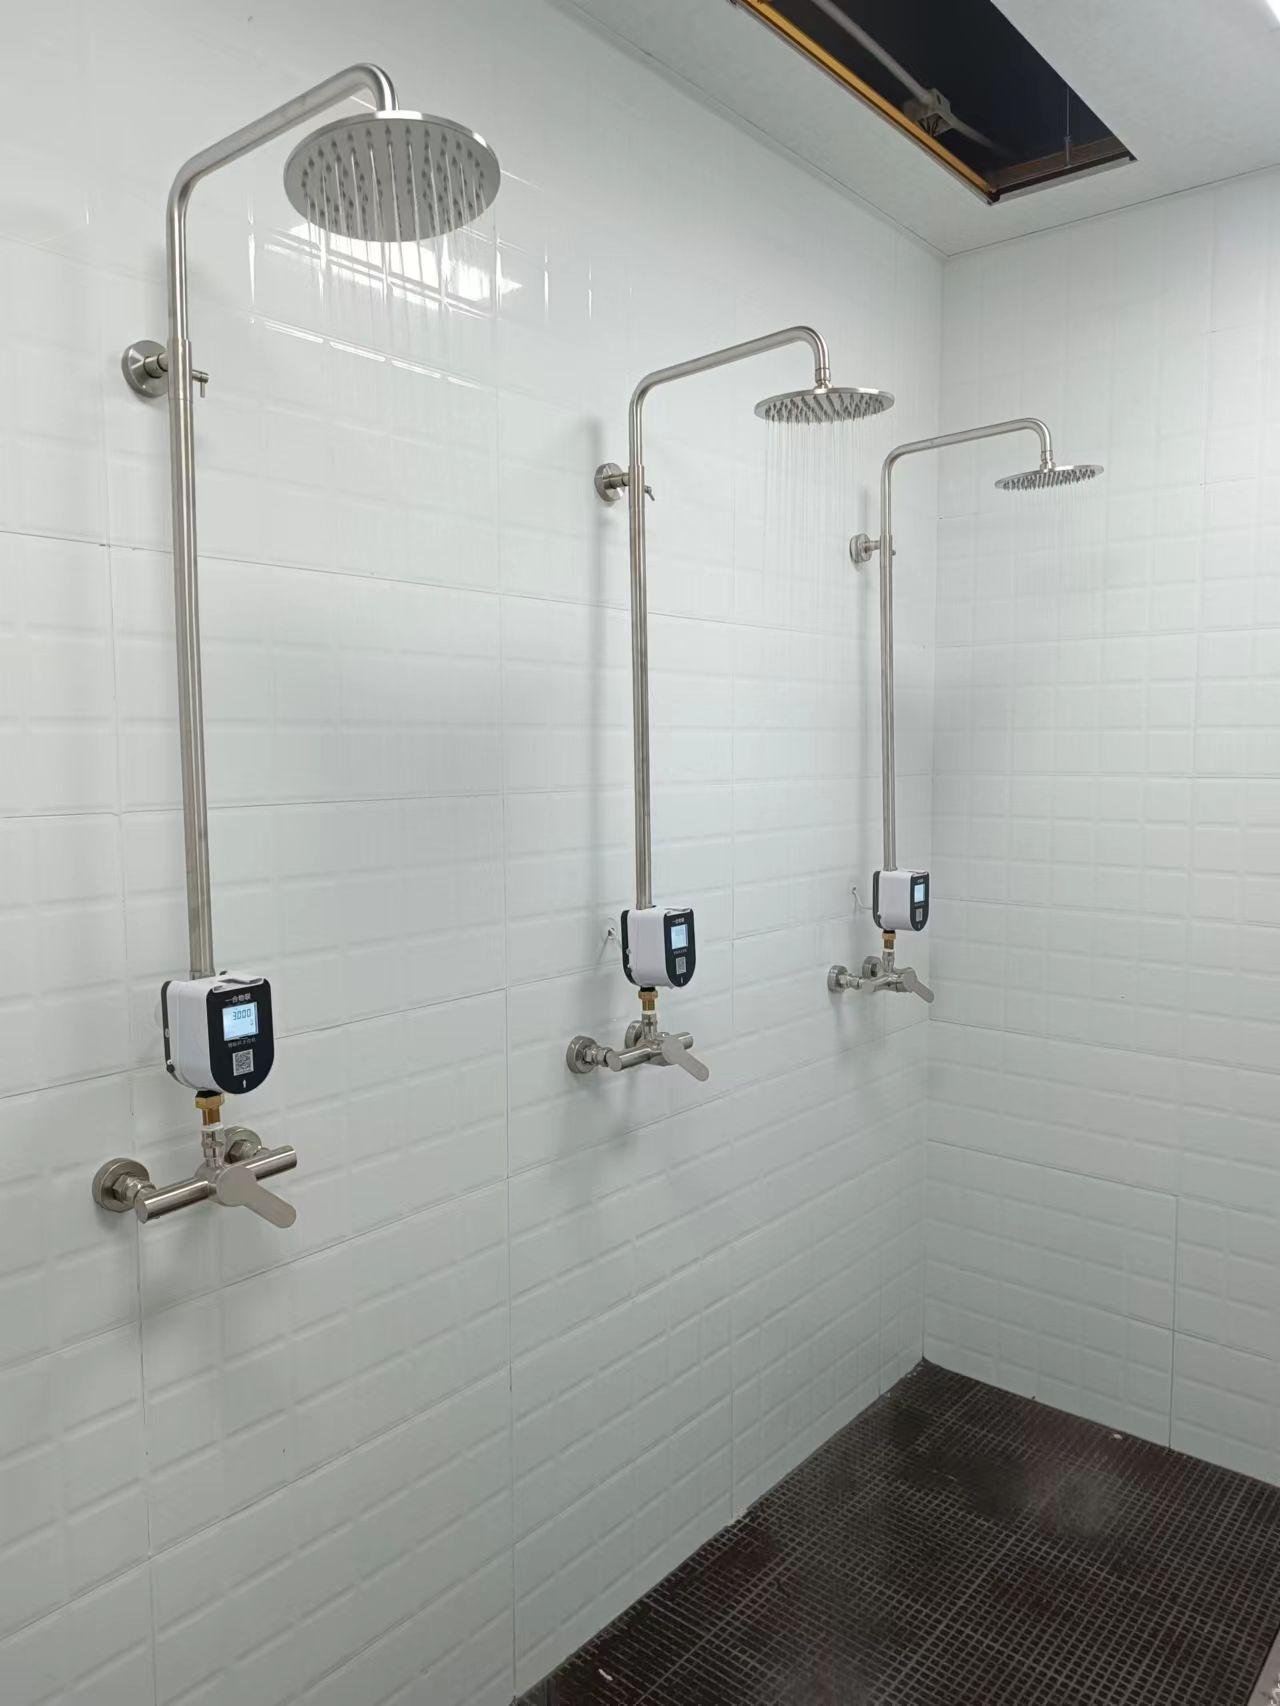 洗澡刷卡节水系统 2